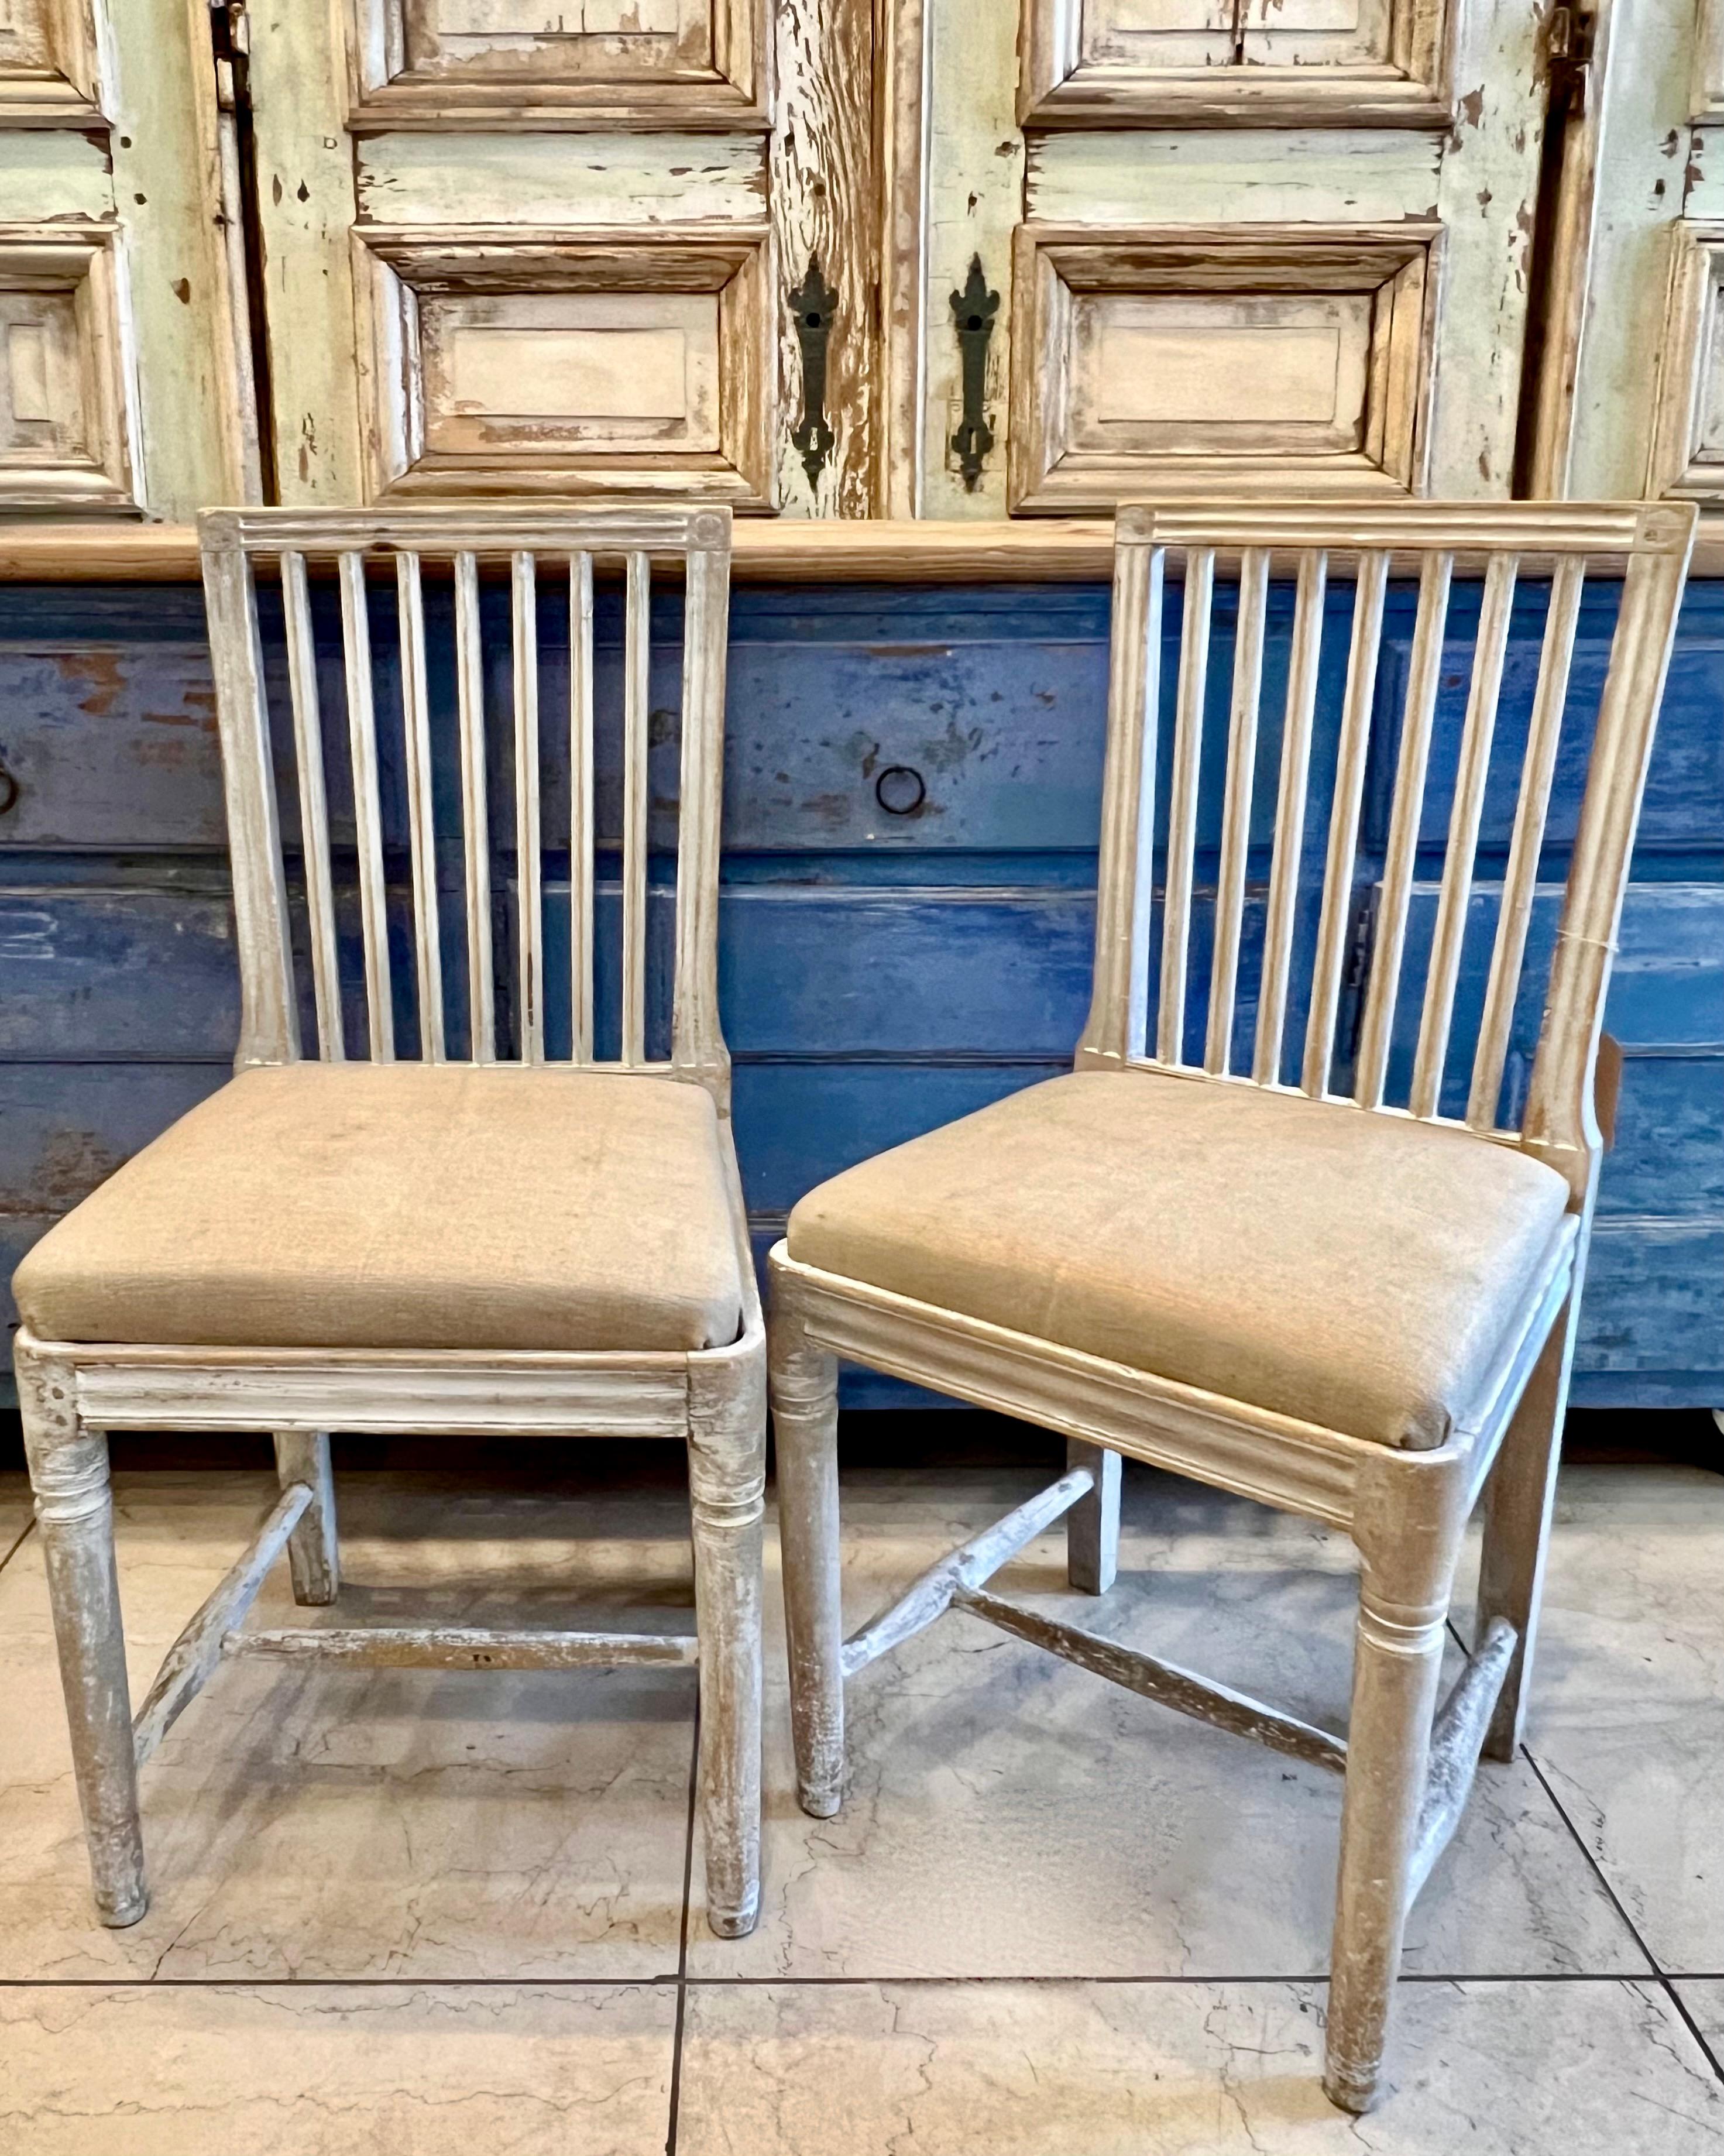 Ein Paar schwedische Stühle aus dem frühen 19. Jahrhundert mit geriffelter Rückenlehne, geriffelter Frontschiene und konischen, gedrechselten Beinen.
Die Sitzpads sind mit Leinen bezogen.